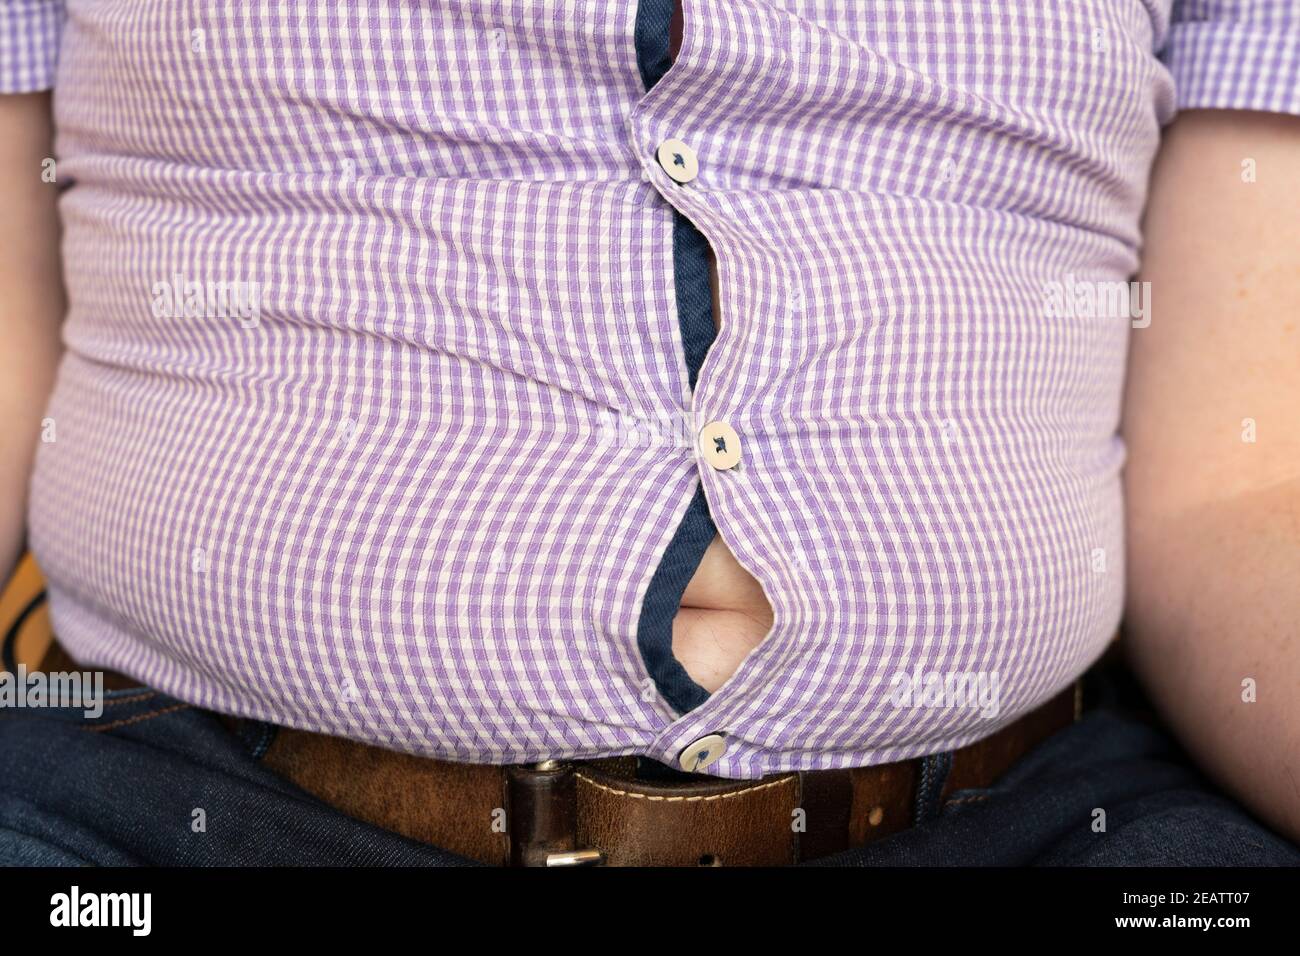 Ein übergewichtiger Mann mit einem Hemd, das über seinen großen Bauch gestreckt ist. Thema: Bierbauch, Übergewicht, covid-19 Lockdown, mangelnde Bewegung, sitzende Lebensweise Stockfoto